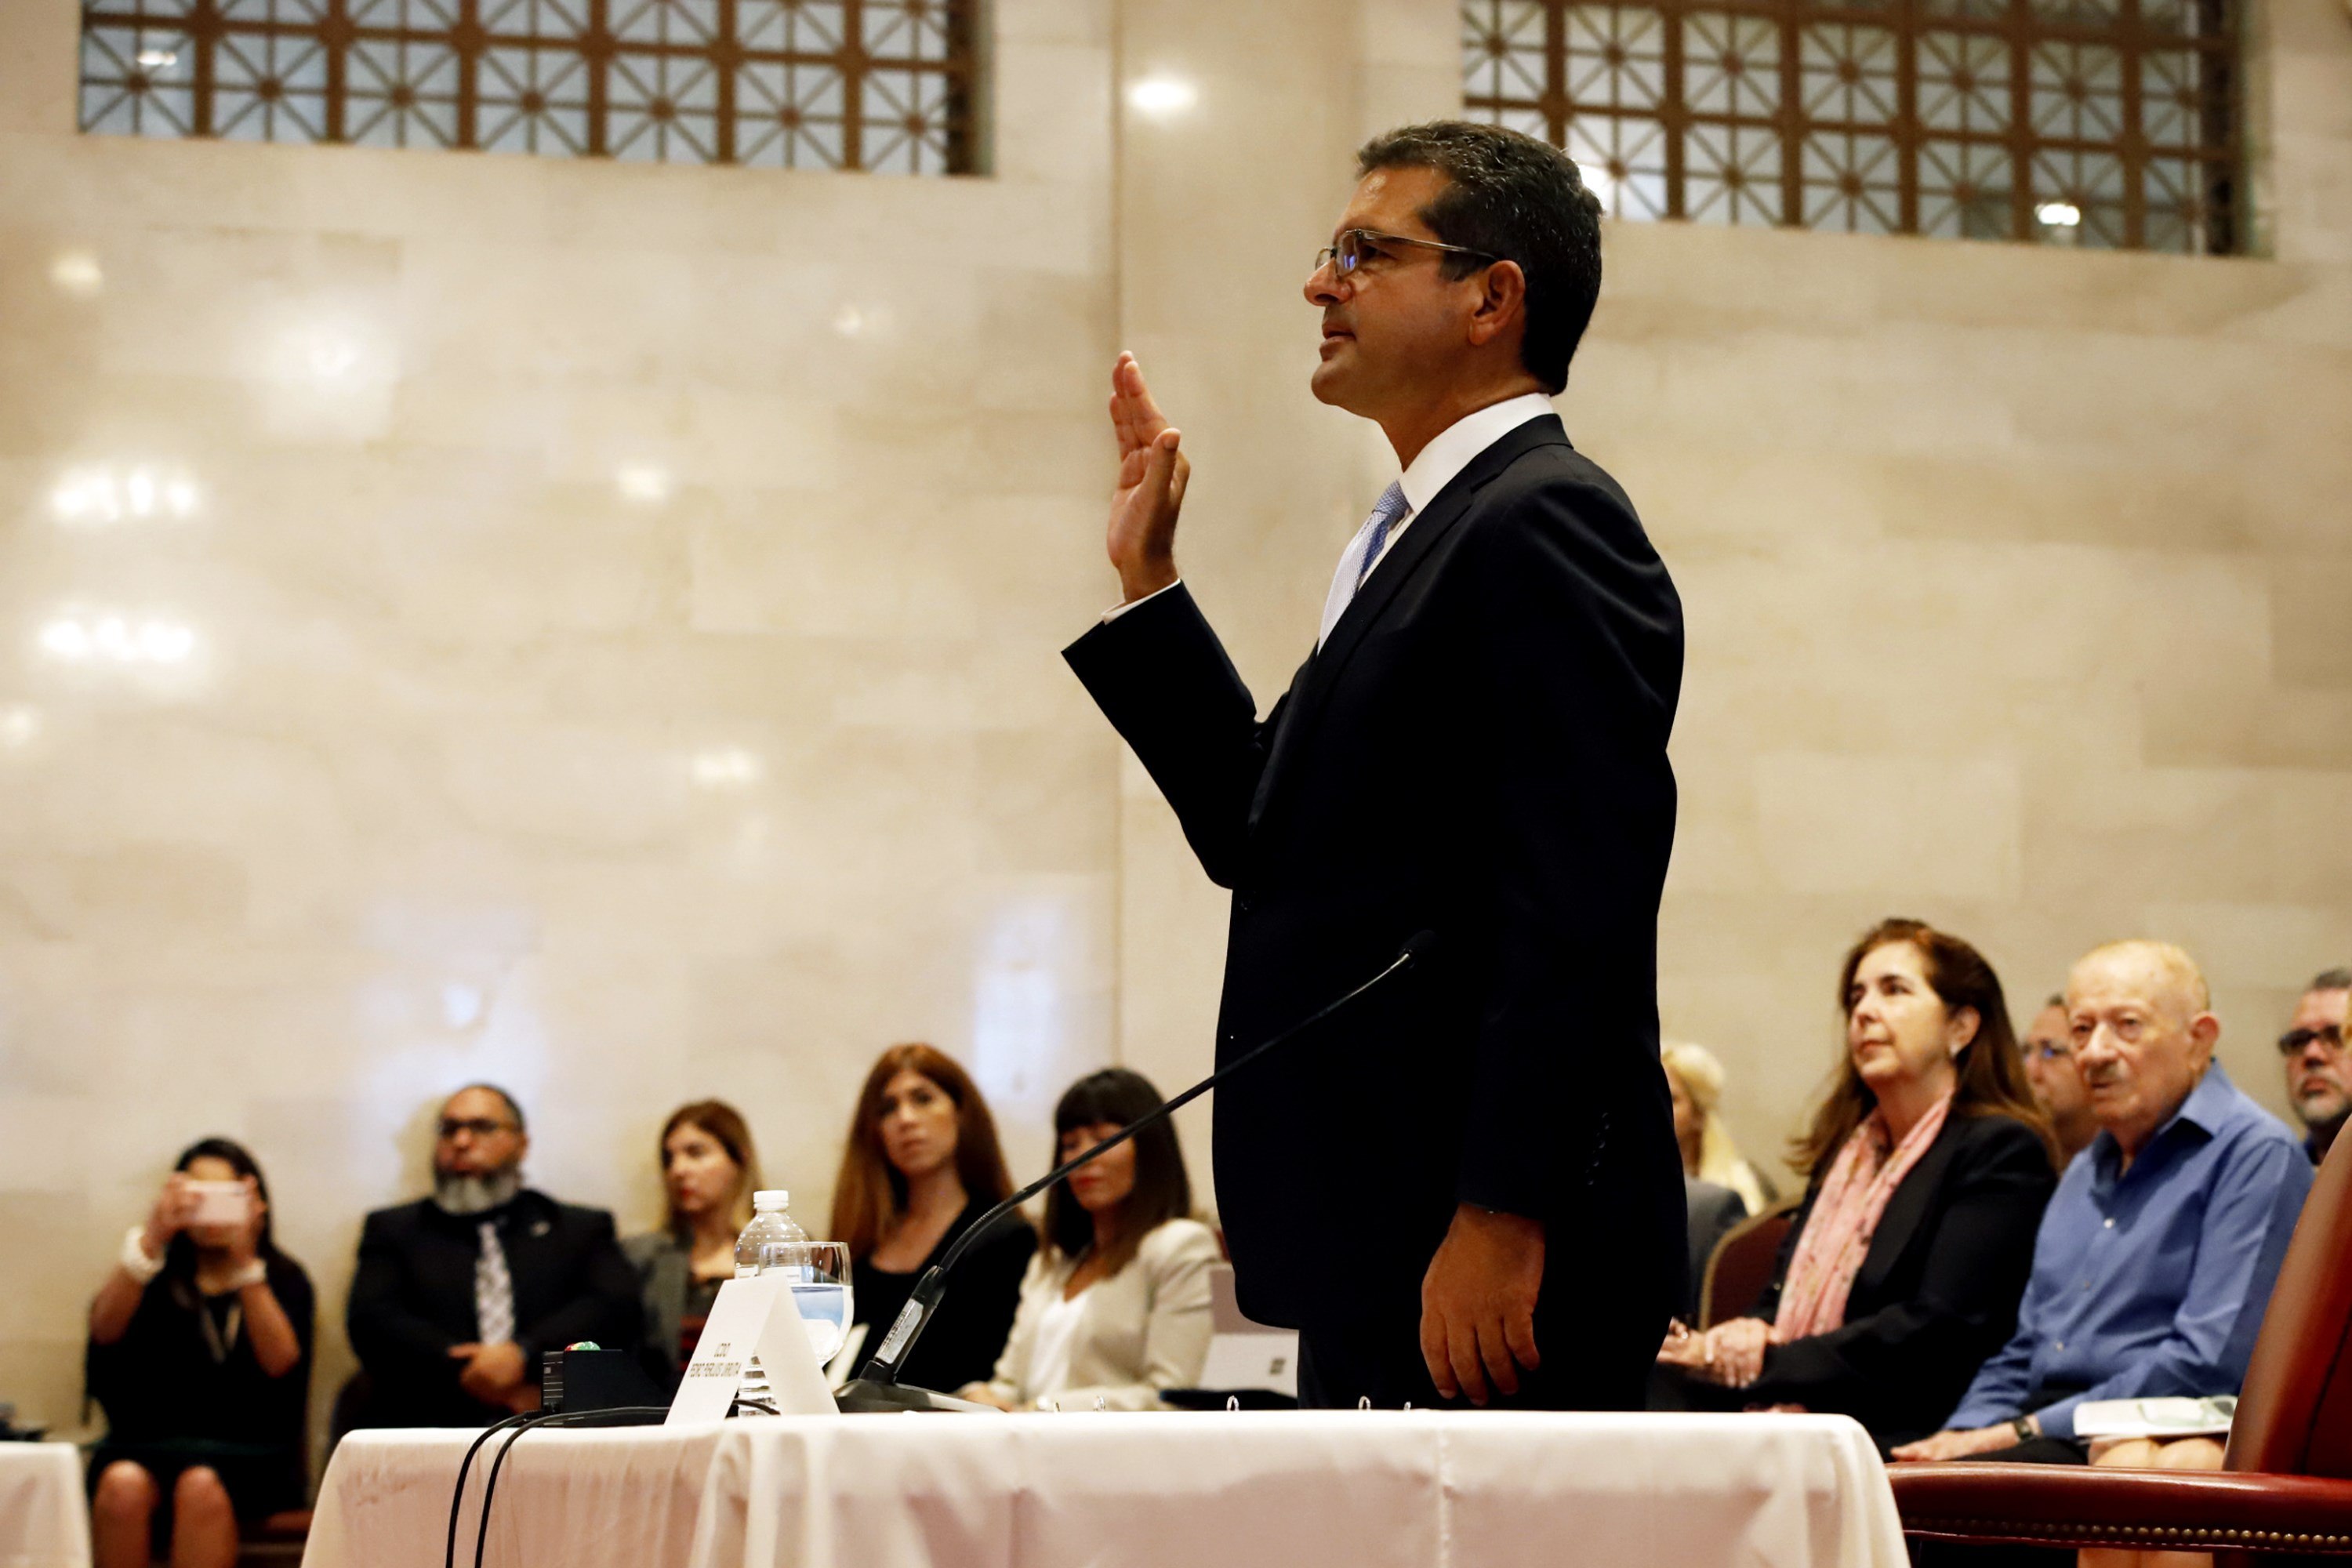 Anulan por inconstitucional la juramentación de gobernador de Puerto Rico